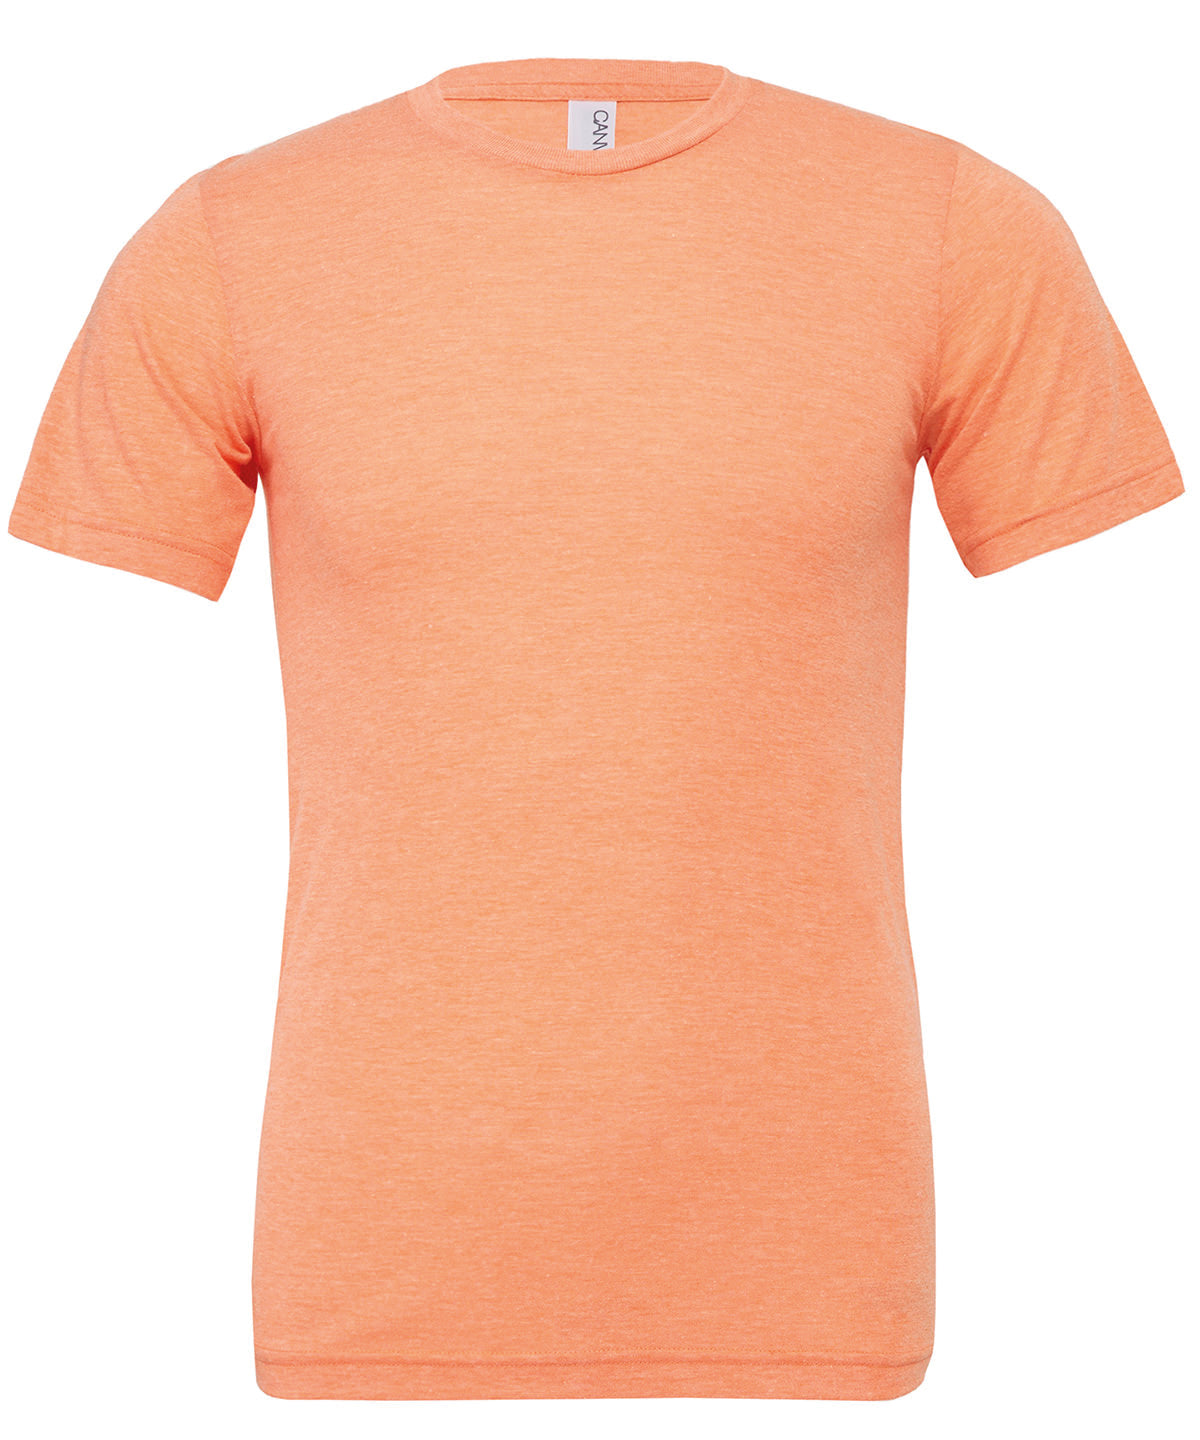 Bella Canvas Unisex Triblend Crew Neck T-Shirt - Orange Triblend